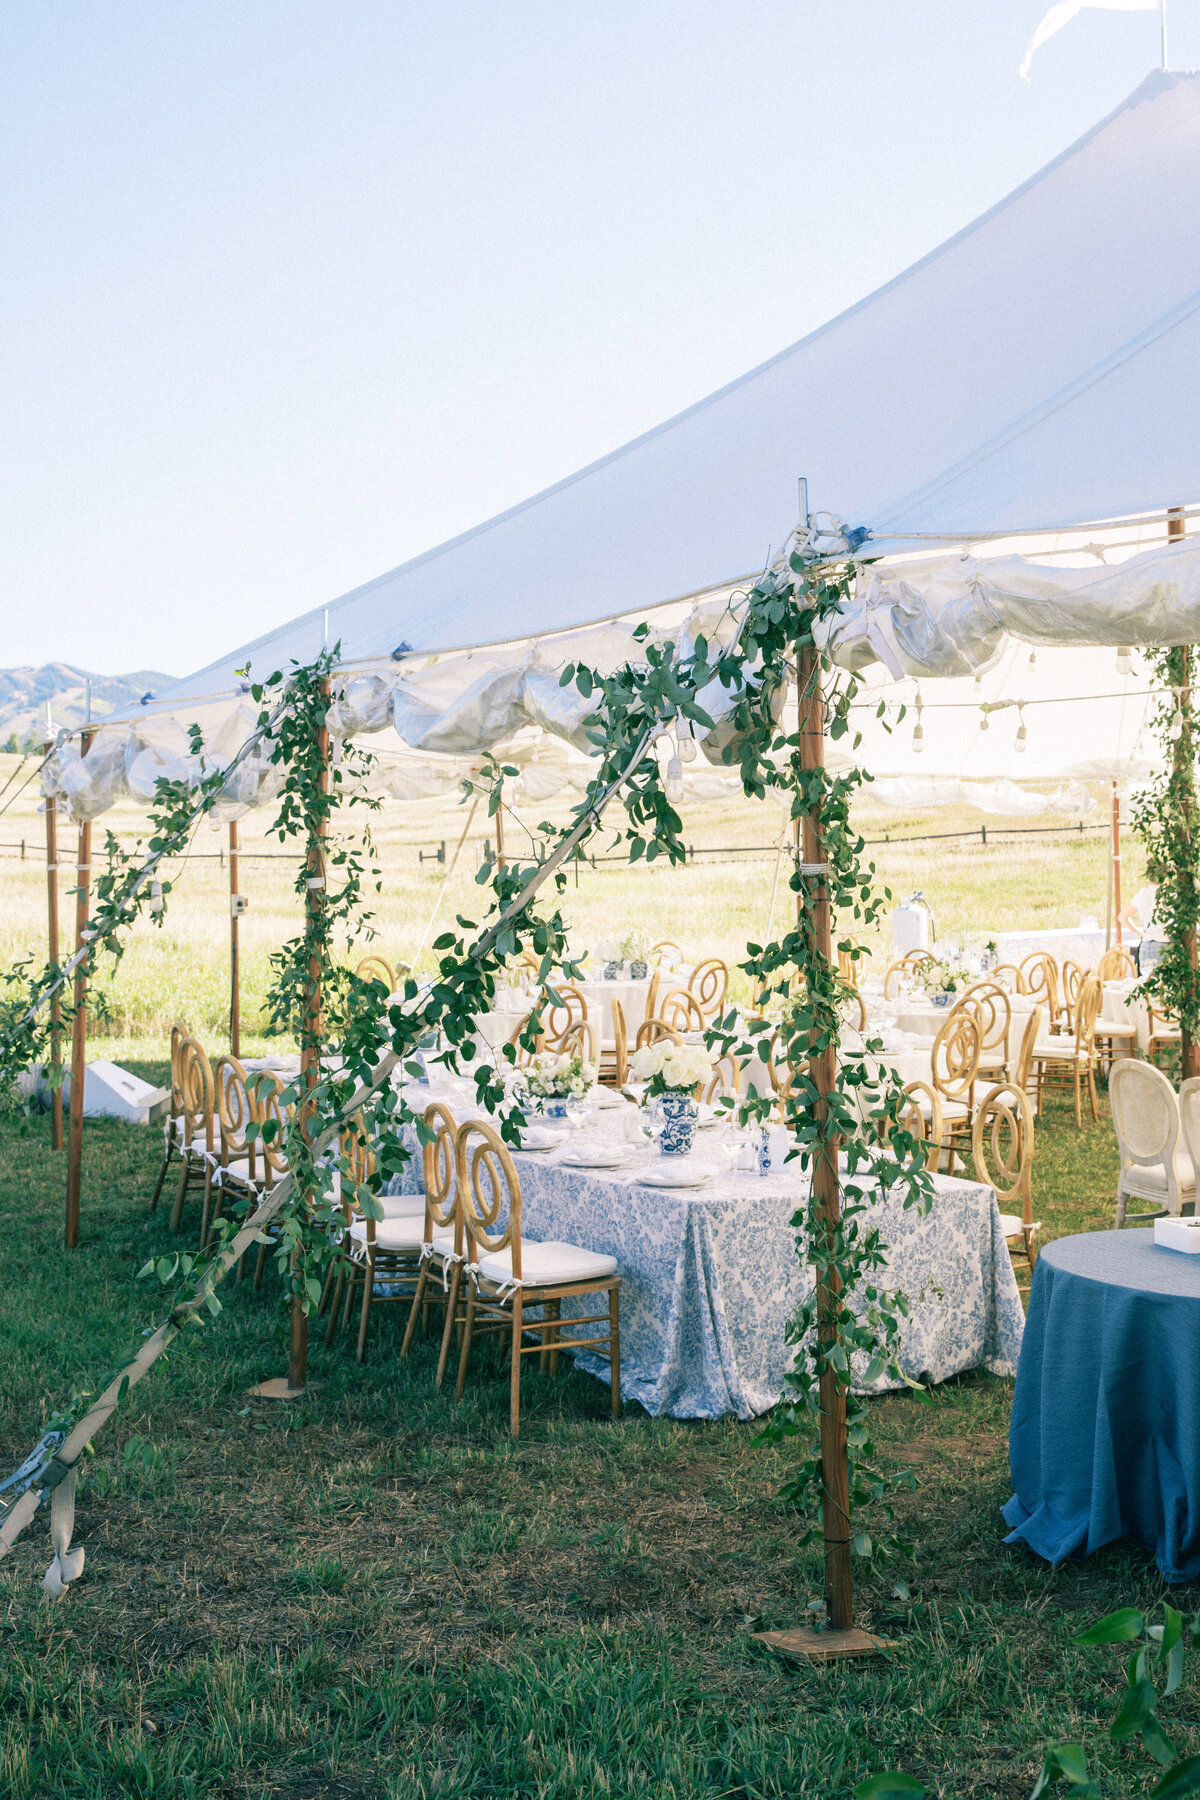 Tent details at Colorado wedding